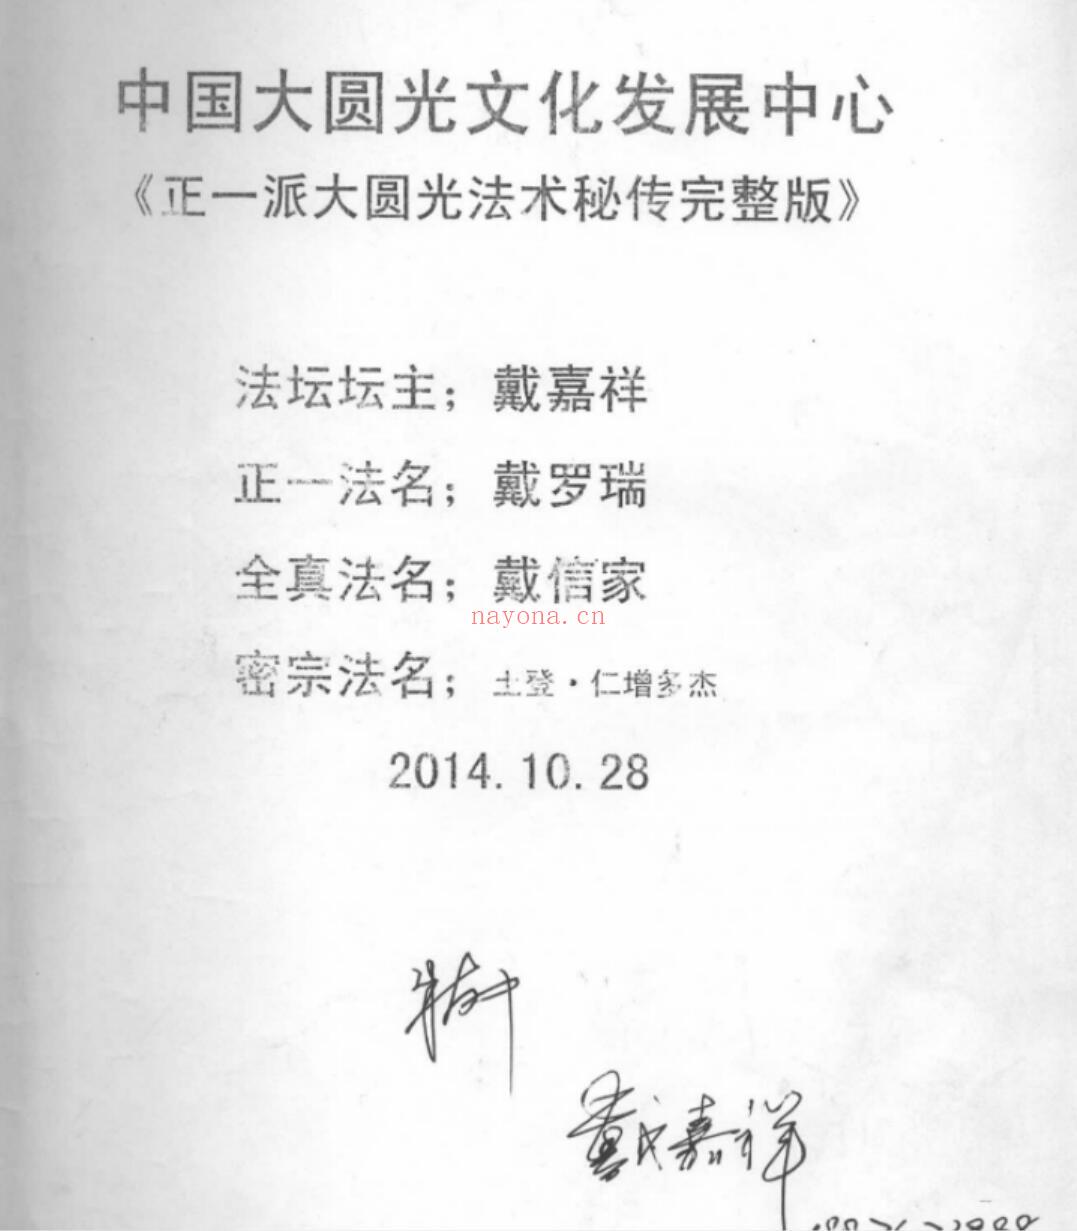 陈恒阳师傅亲传-大圆光术pdf 32页